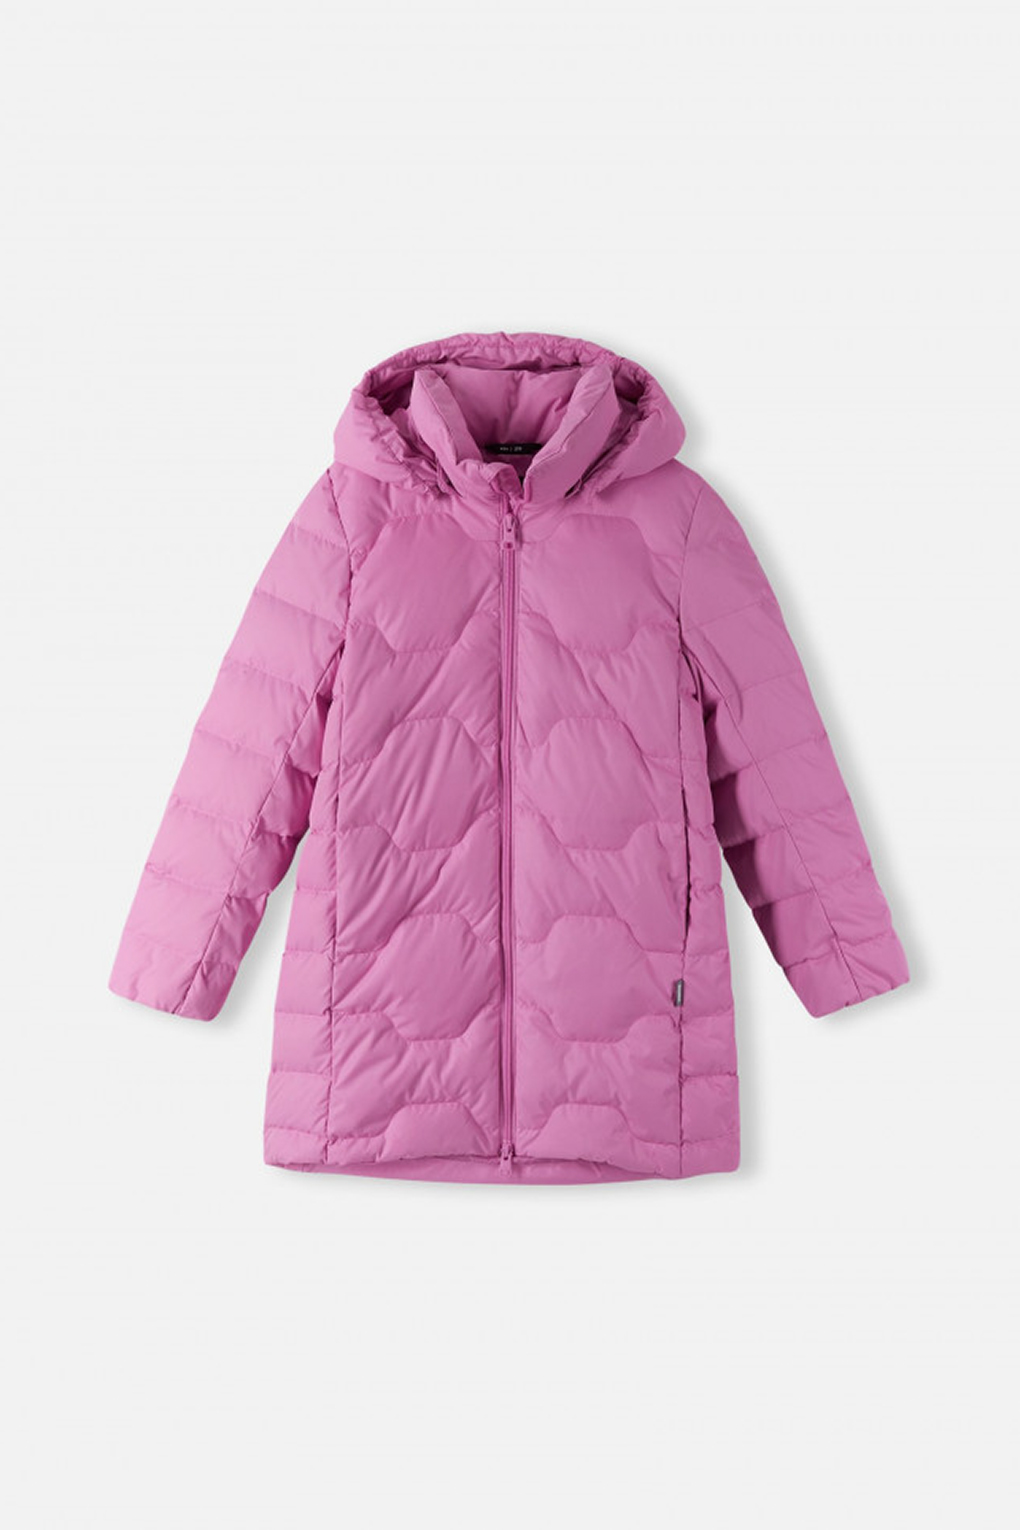 Куртка пуховая Reima 5100083A для девочек, цвет Розовый р.104, розовый  - купить